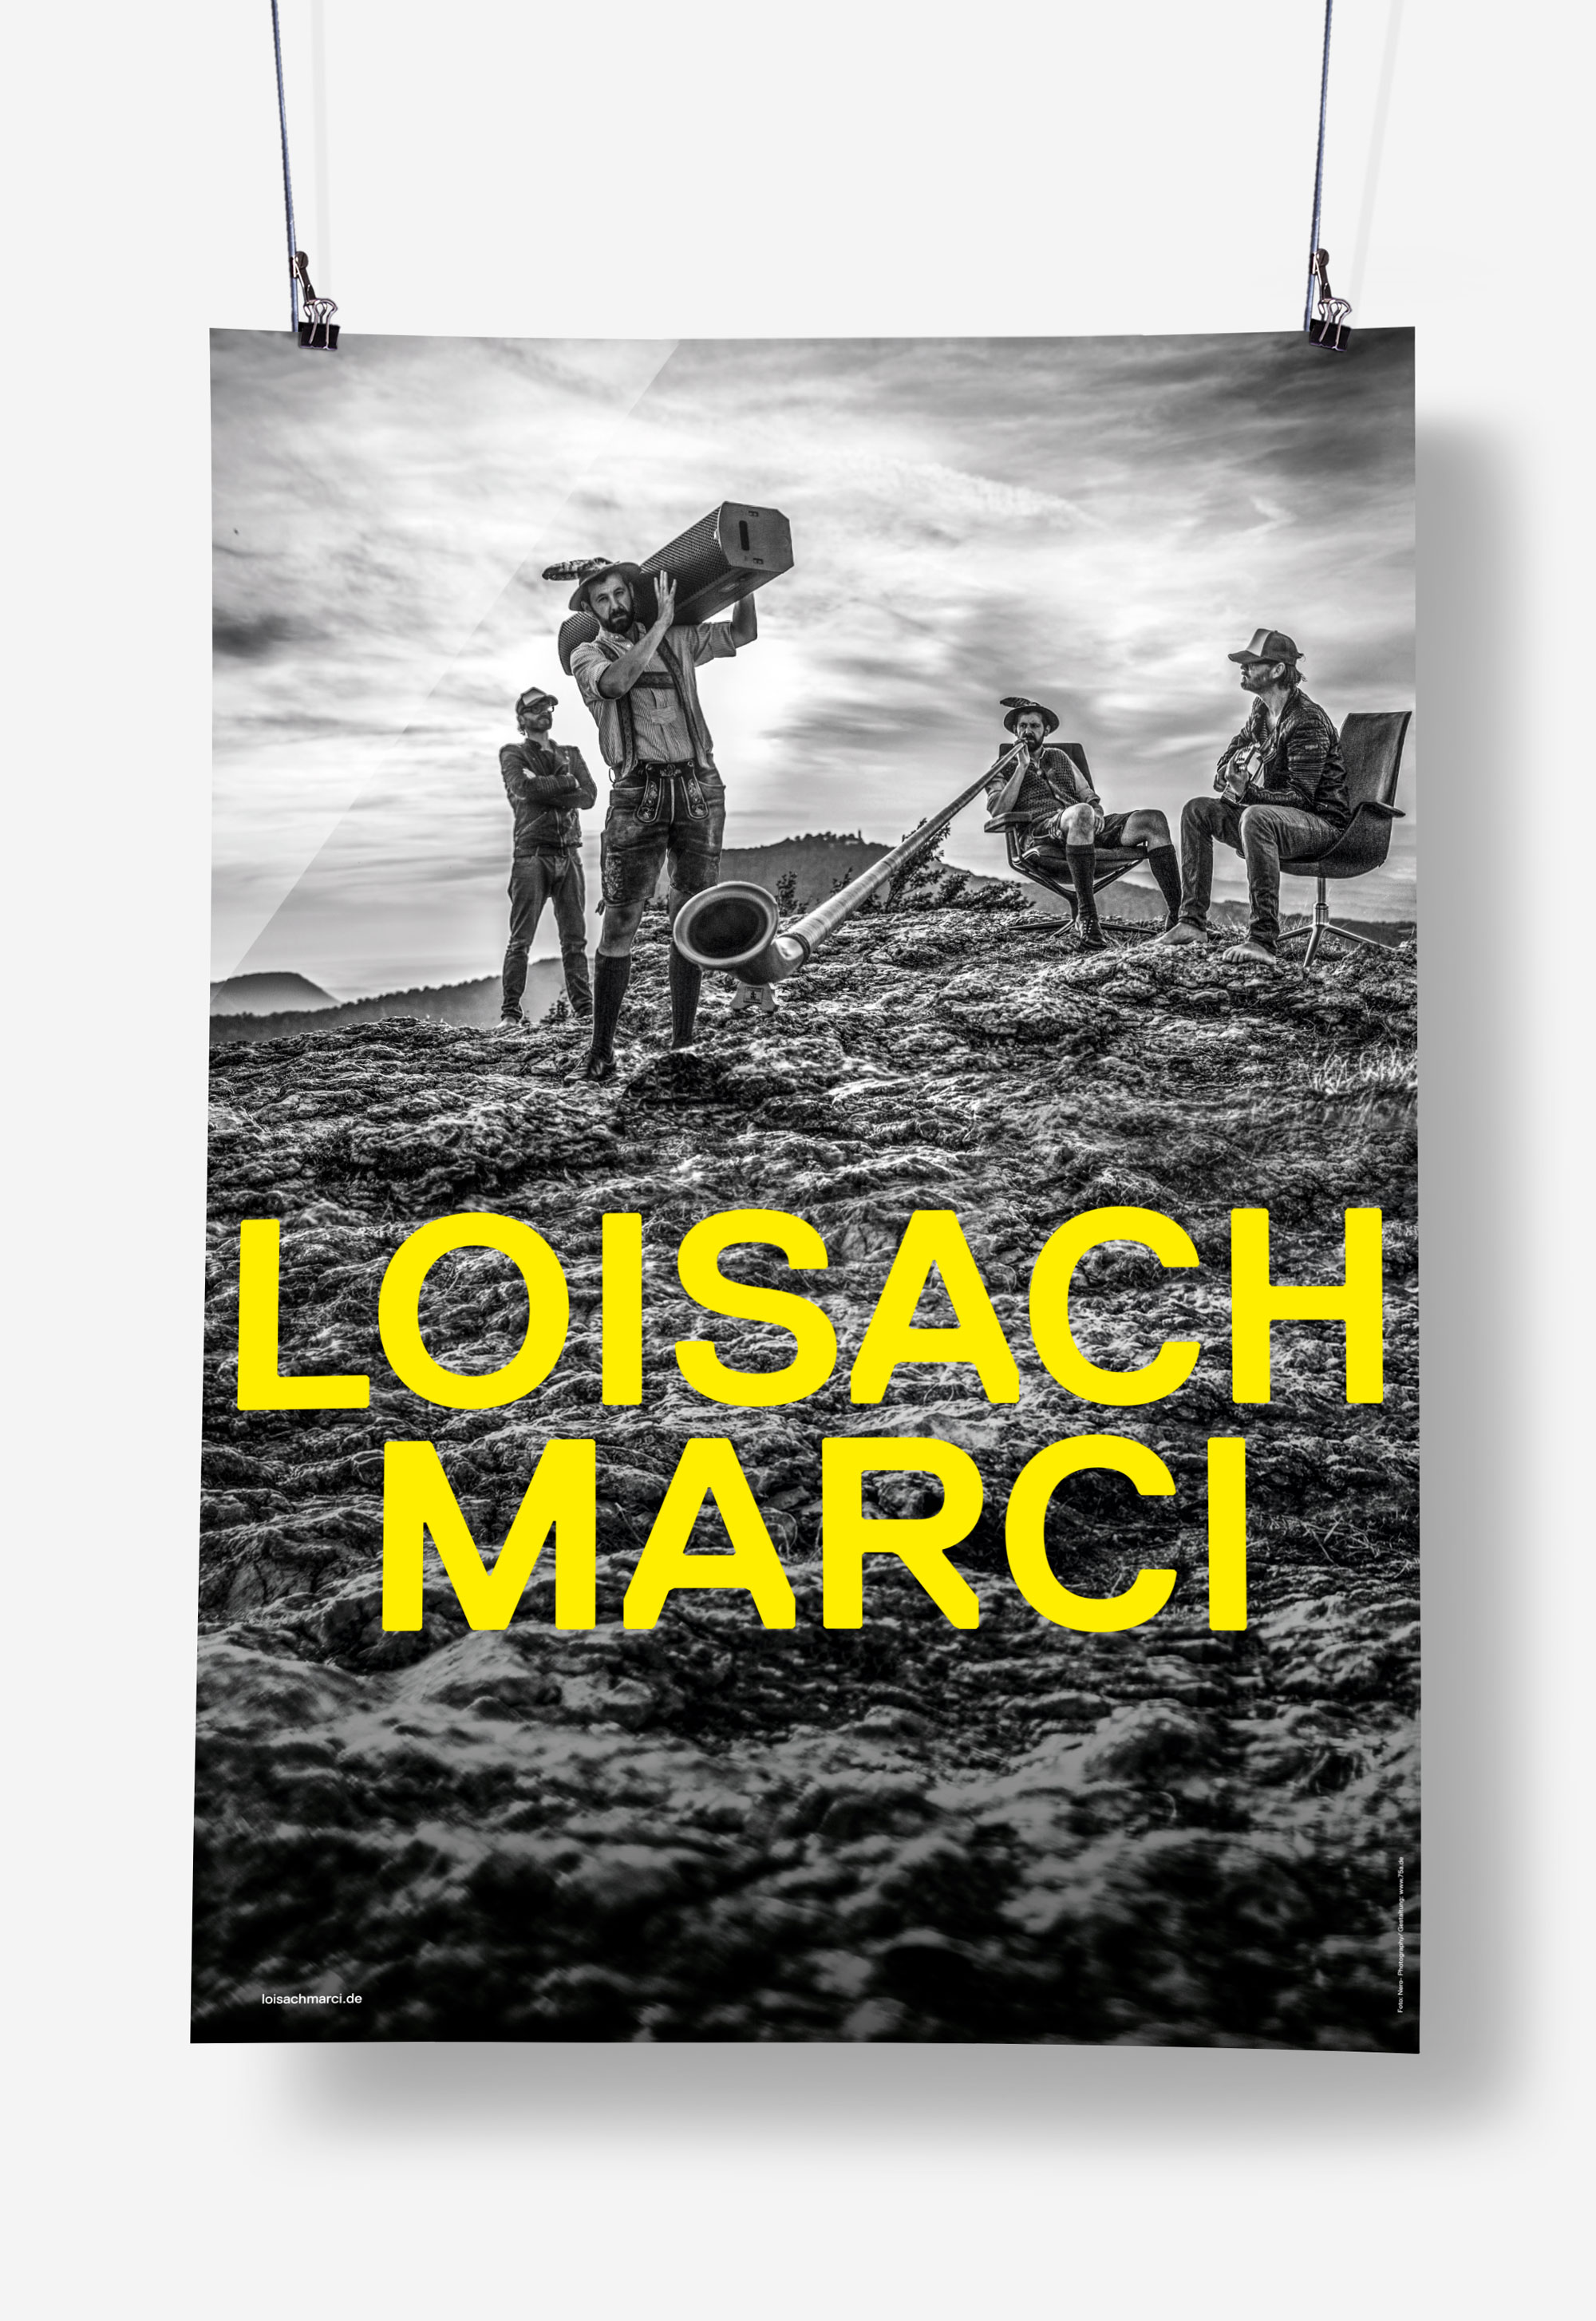 75a, Büro für Gestaltung aus Stuttgart, hat das Tourplakat für Loisach Marci gestaltet.